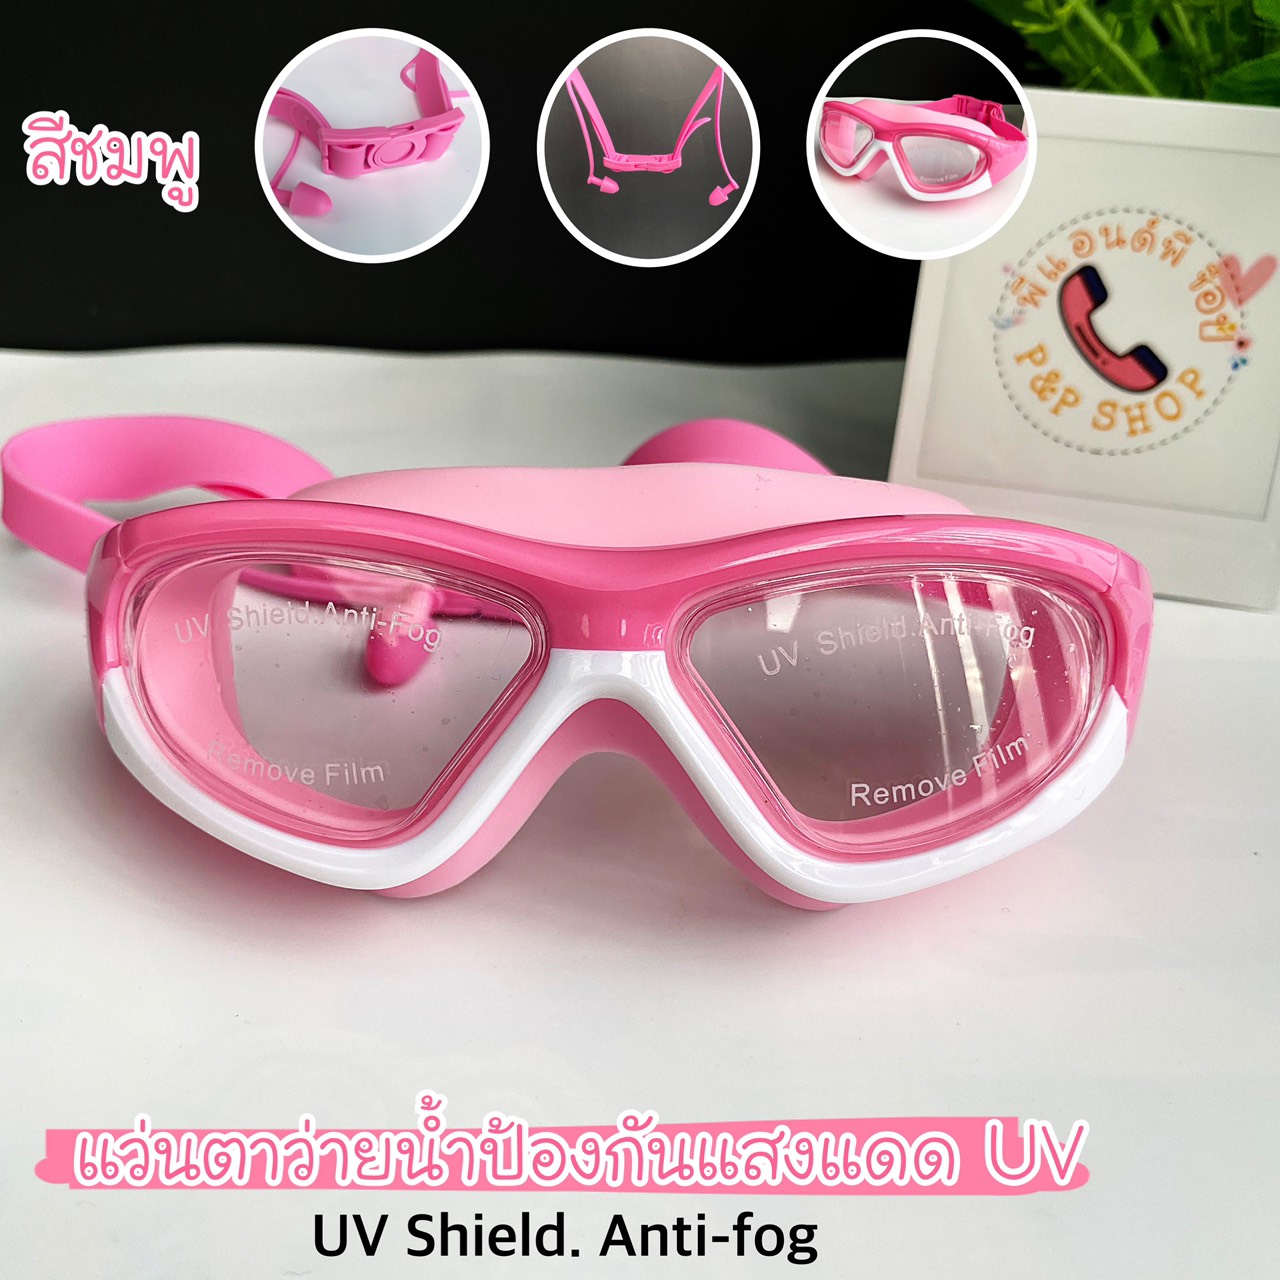 ลองดูภาพสินค้า แว่นตาว่ายน้ำเด็กสีสันสดใส ช่วยป้องกันแสงแดด UV  ไม่เป็นฝ้าที่หน้ากระจก สายรัดปรับระดับได้ พร้อมที่อุดหู